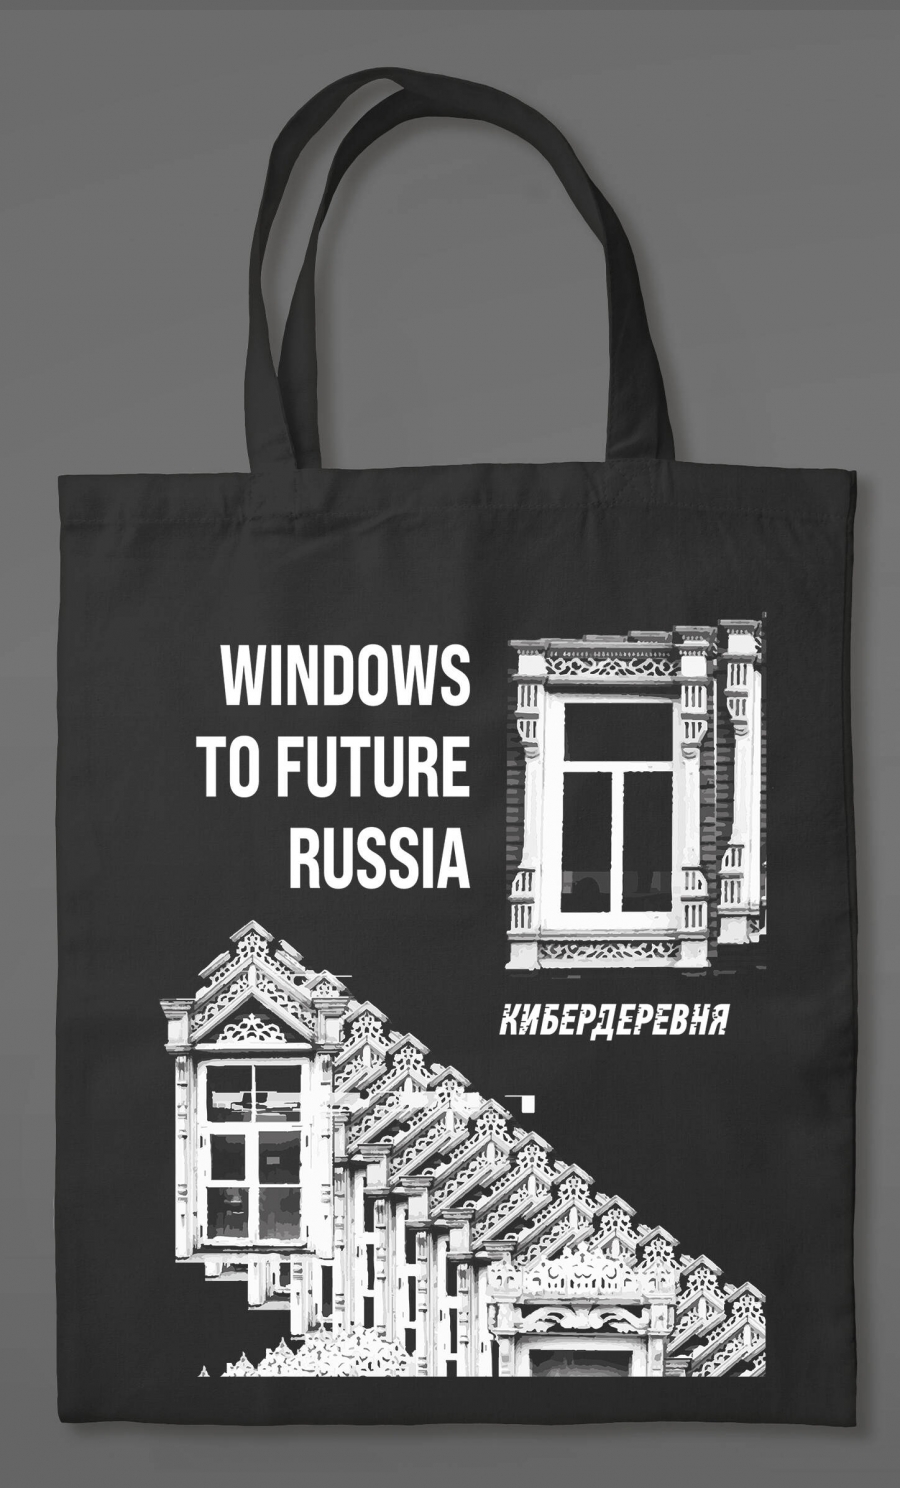   : Windows to future Russia 